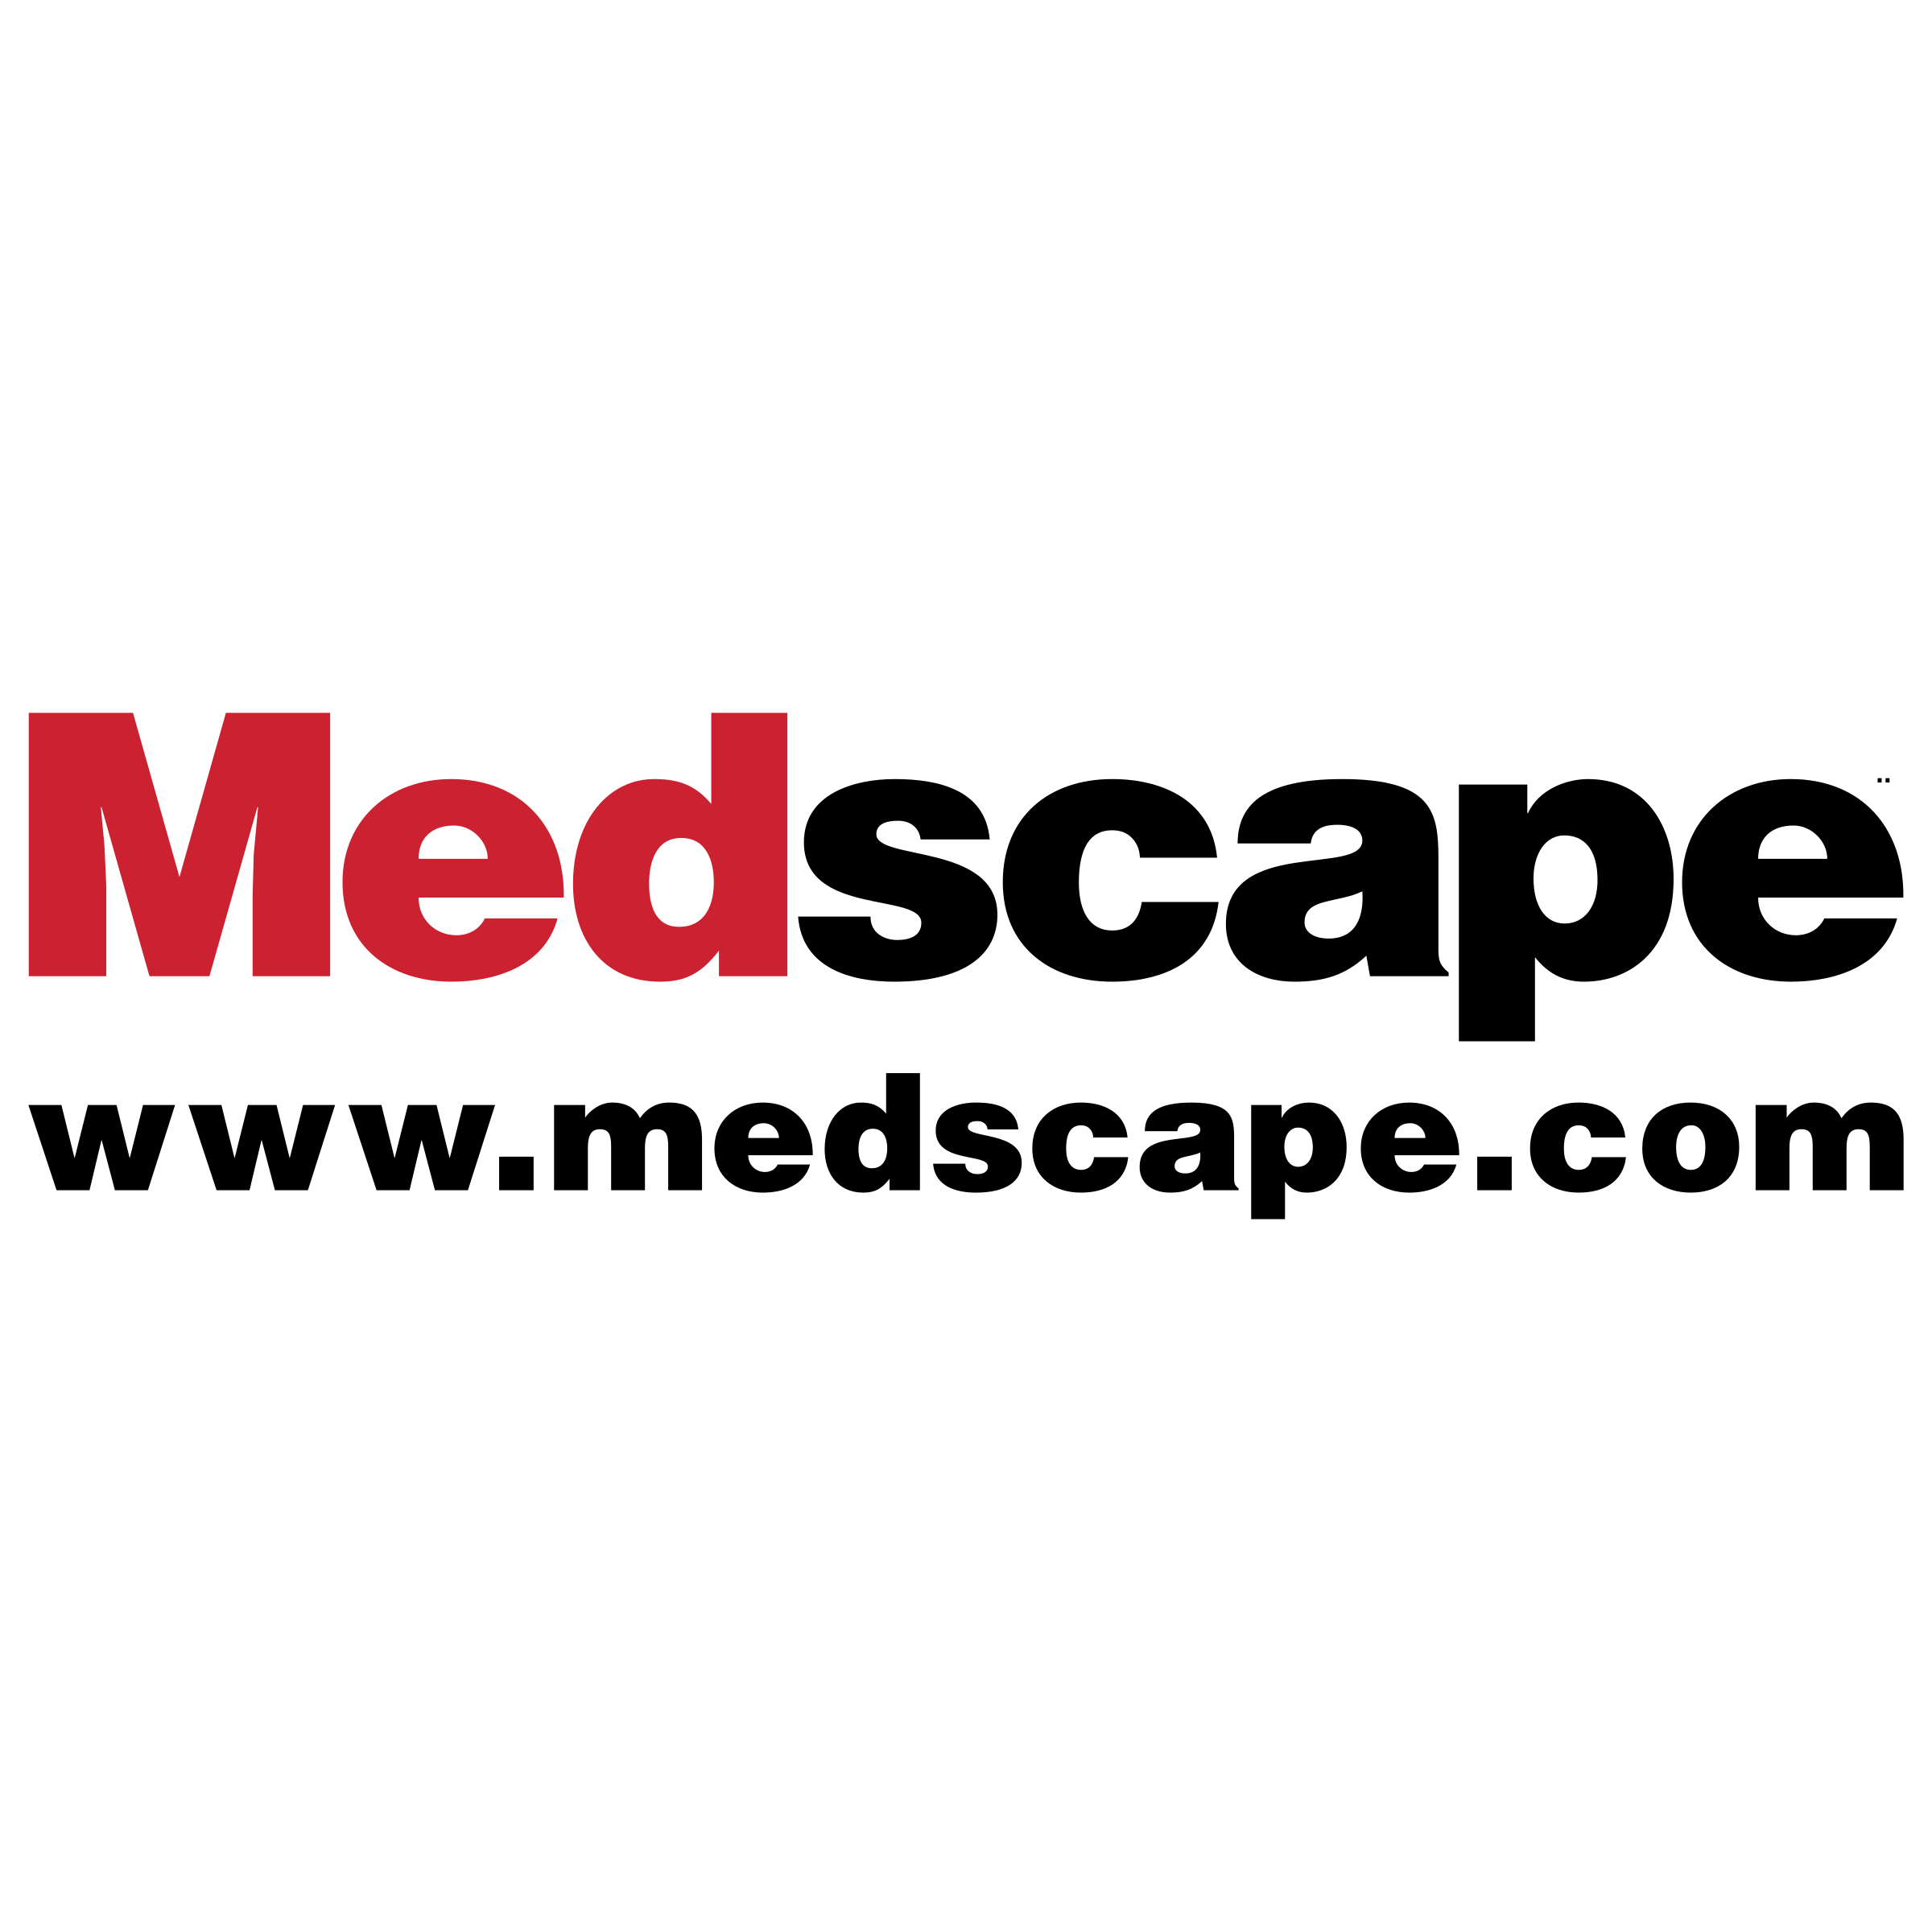 Medscape Logo - Medscape Logo PNG Transparent & SVG Vector - Freebie Supply